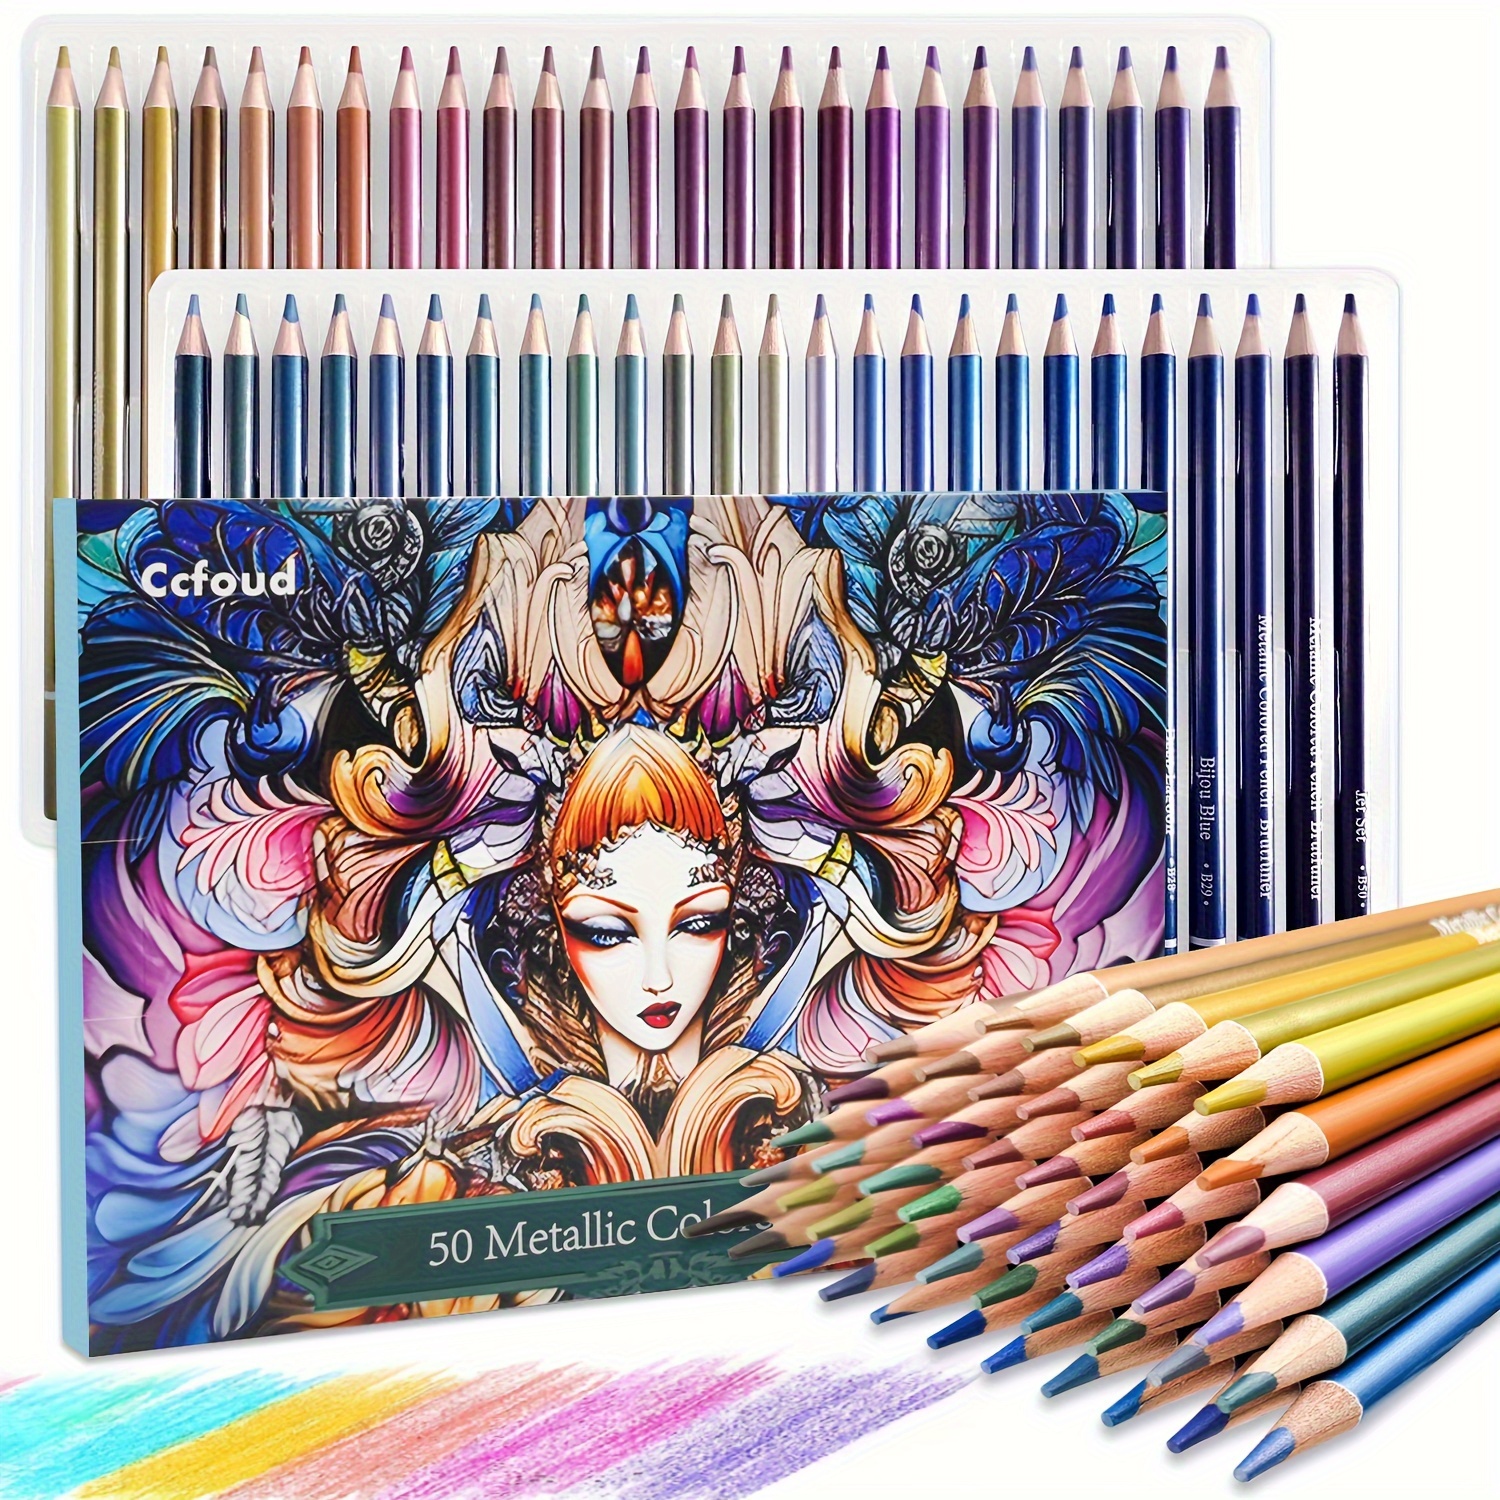 KALOUR Lot de 120 crayons de couleur de qualité supérieure pour artistes  avec noyau souple aux couleurs vives, idéal pour dessiner, esquisser,  ombrager, crayons de coloriage pour adultes, débutants et enfants 